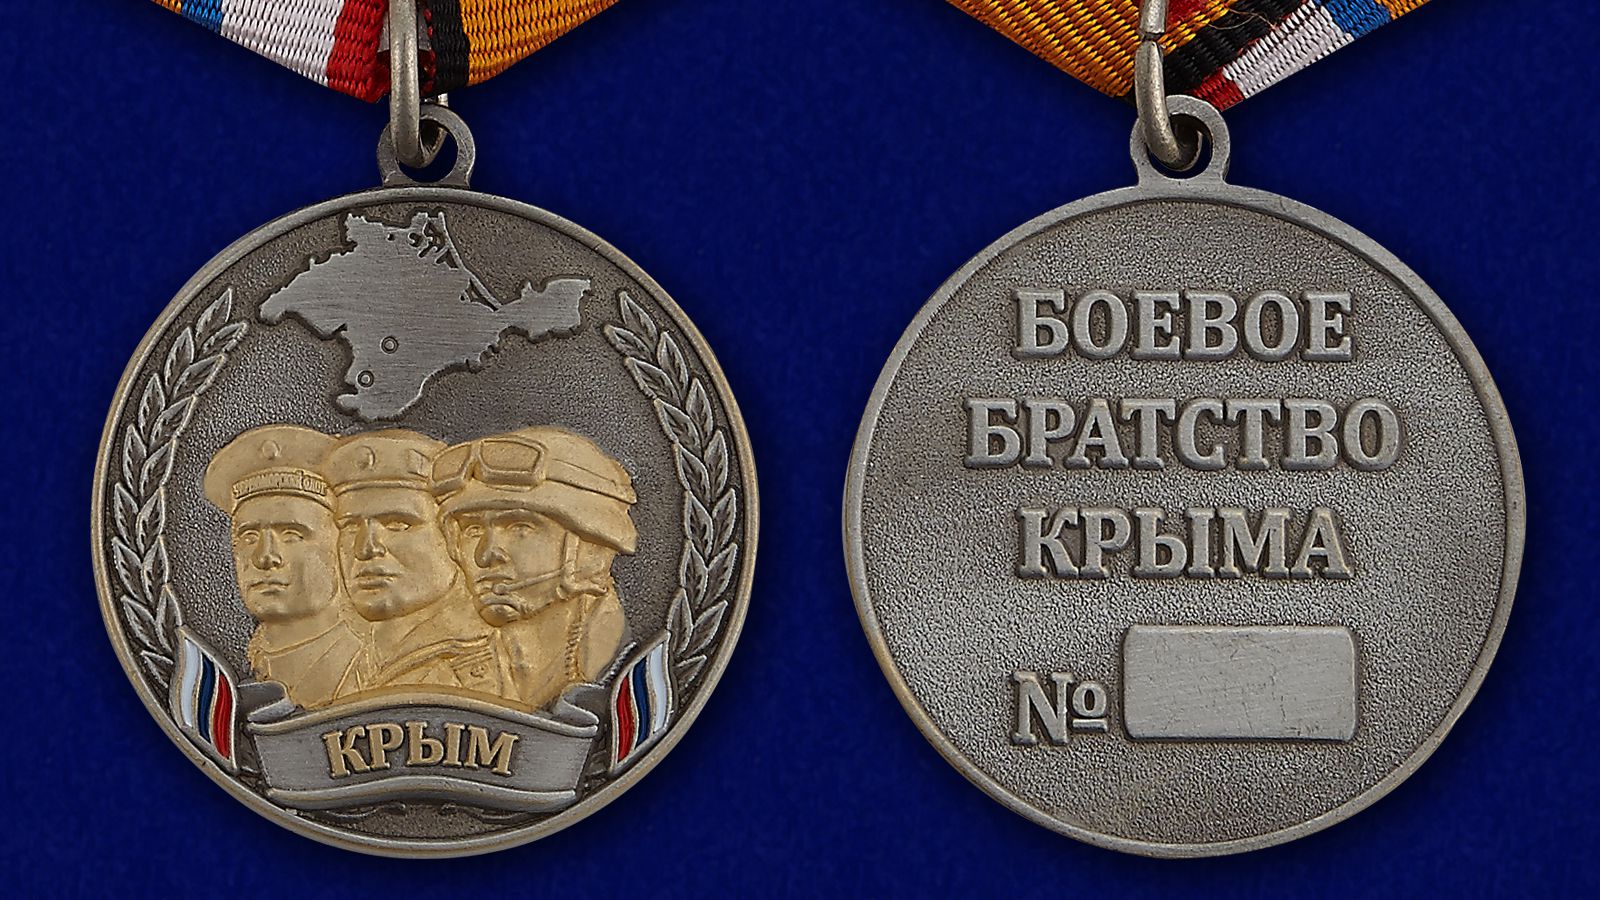 Описание к медали "Боевое братство Крыма" - аверс и реверс